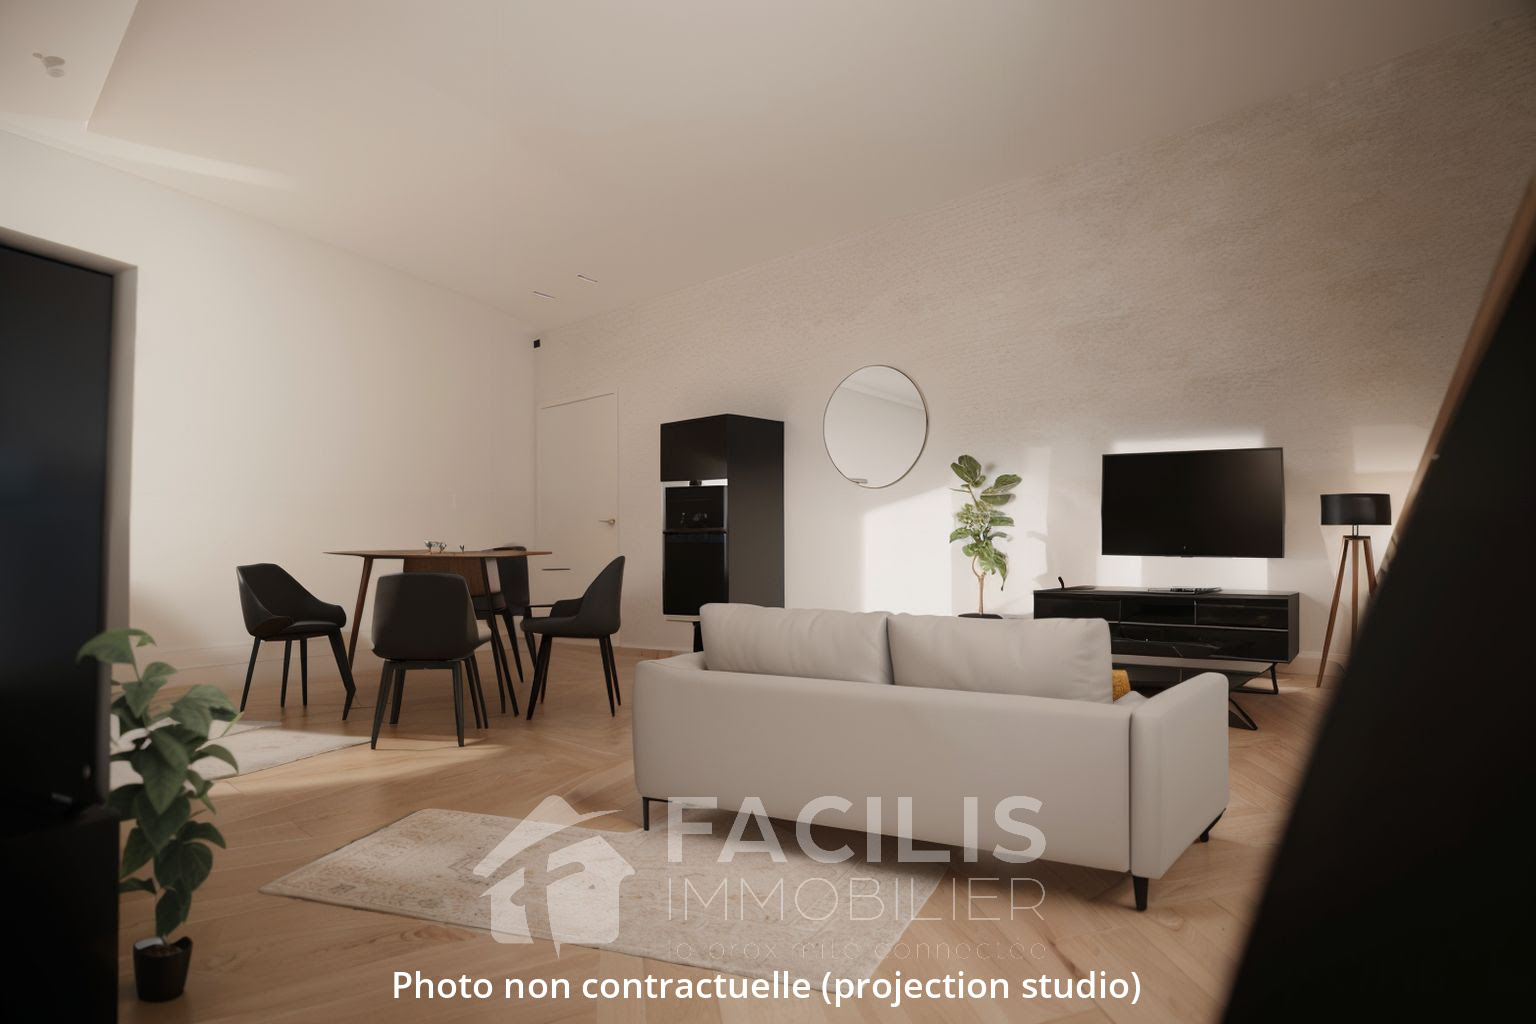 Vente Appartement 60m² 1 Pièce à Poitiers (86000) - Facilis Immobilier